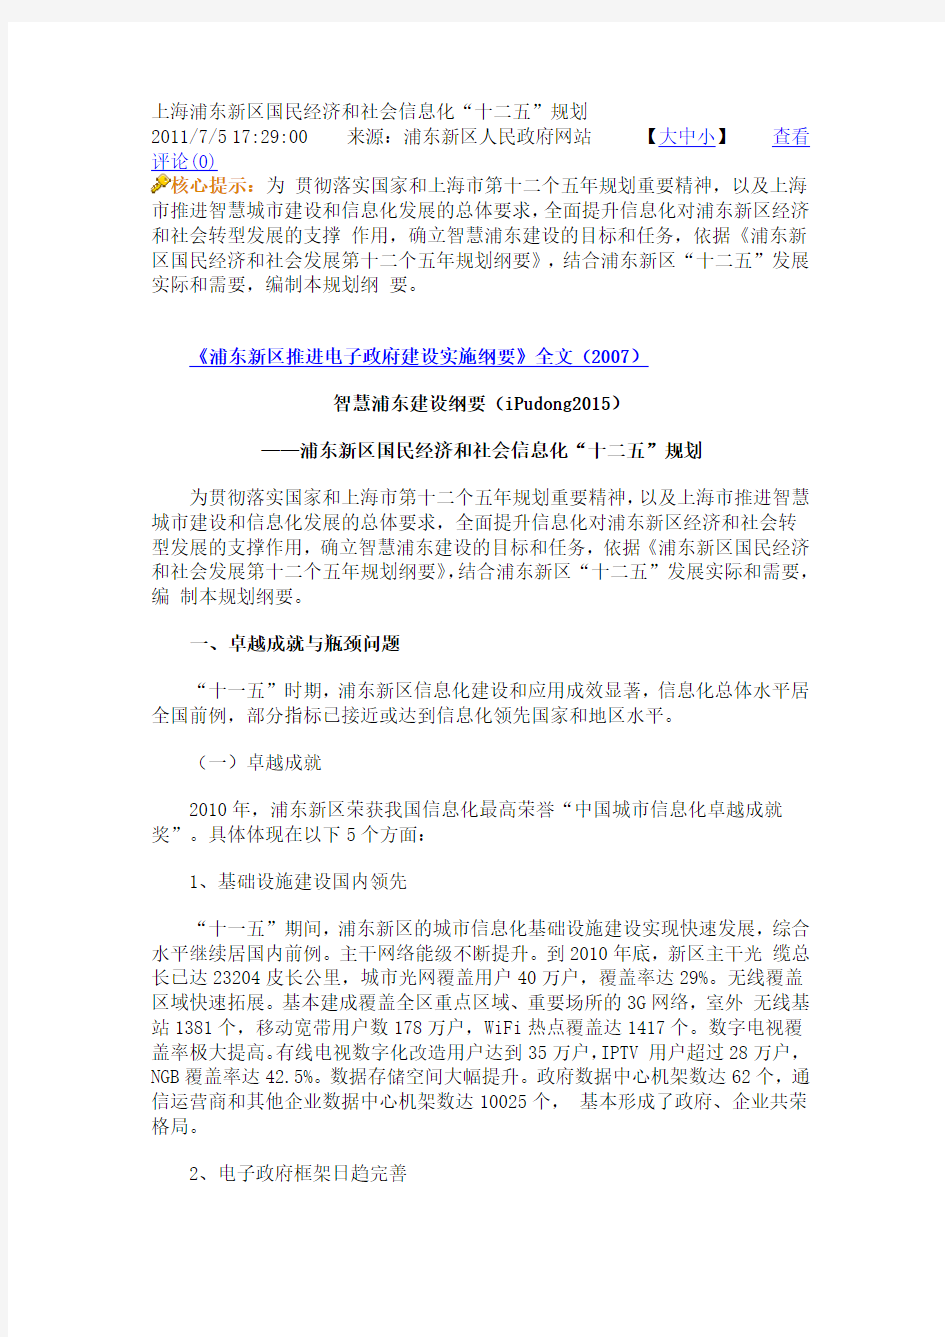 上海浦东新区国民经济和社会信息化“十二五”规划